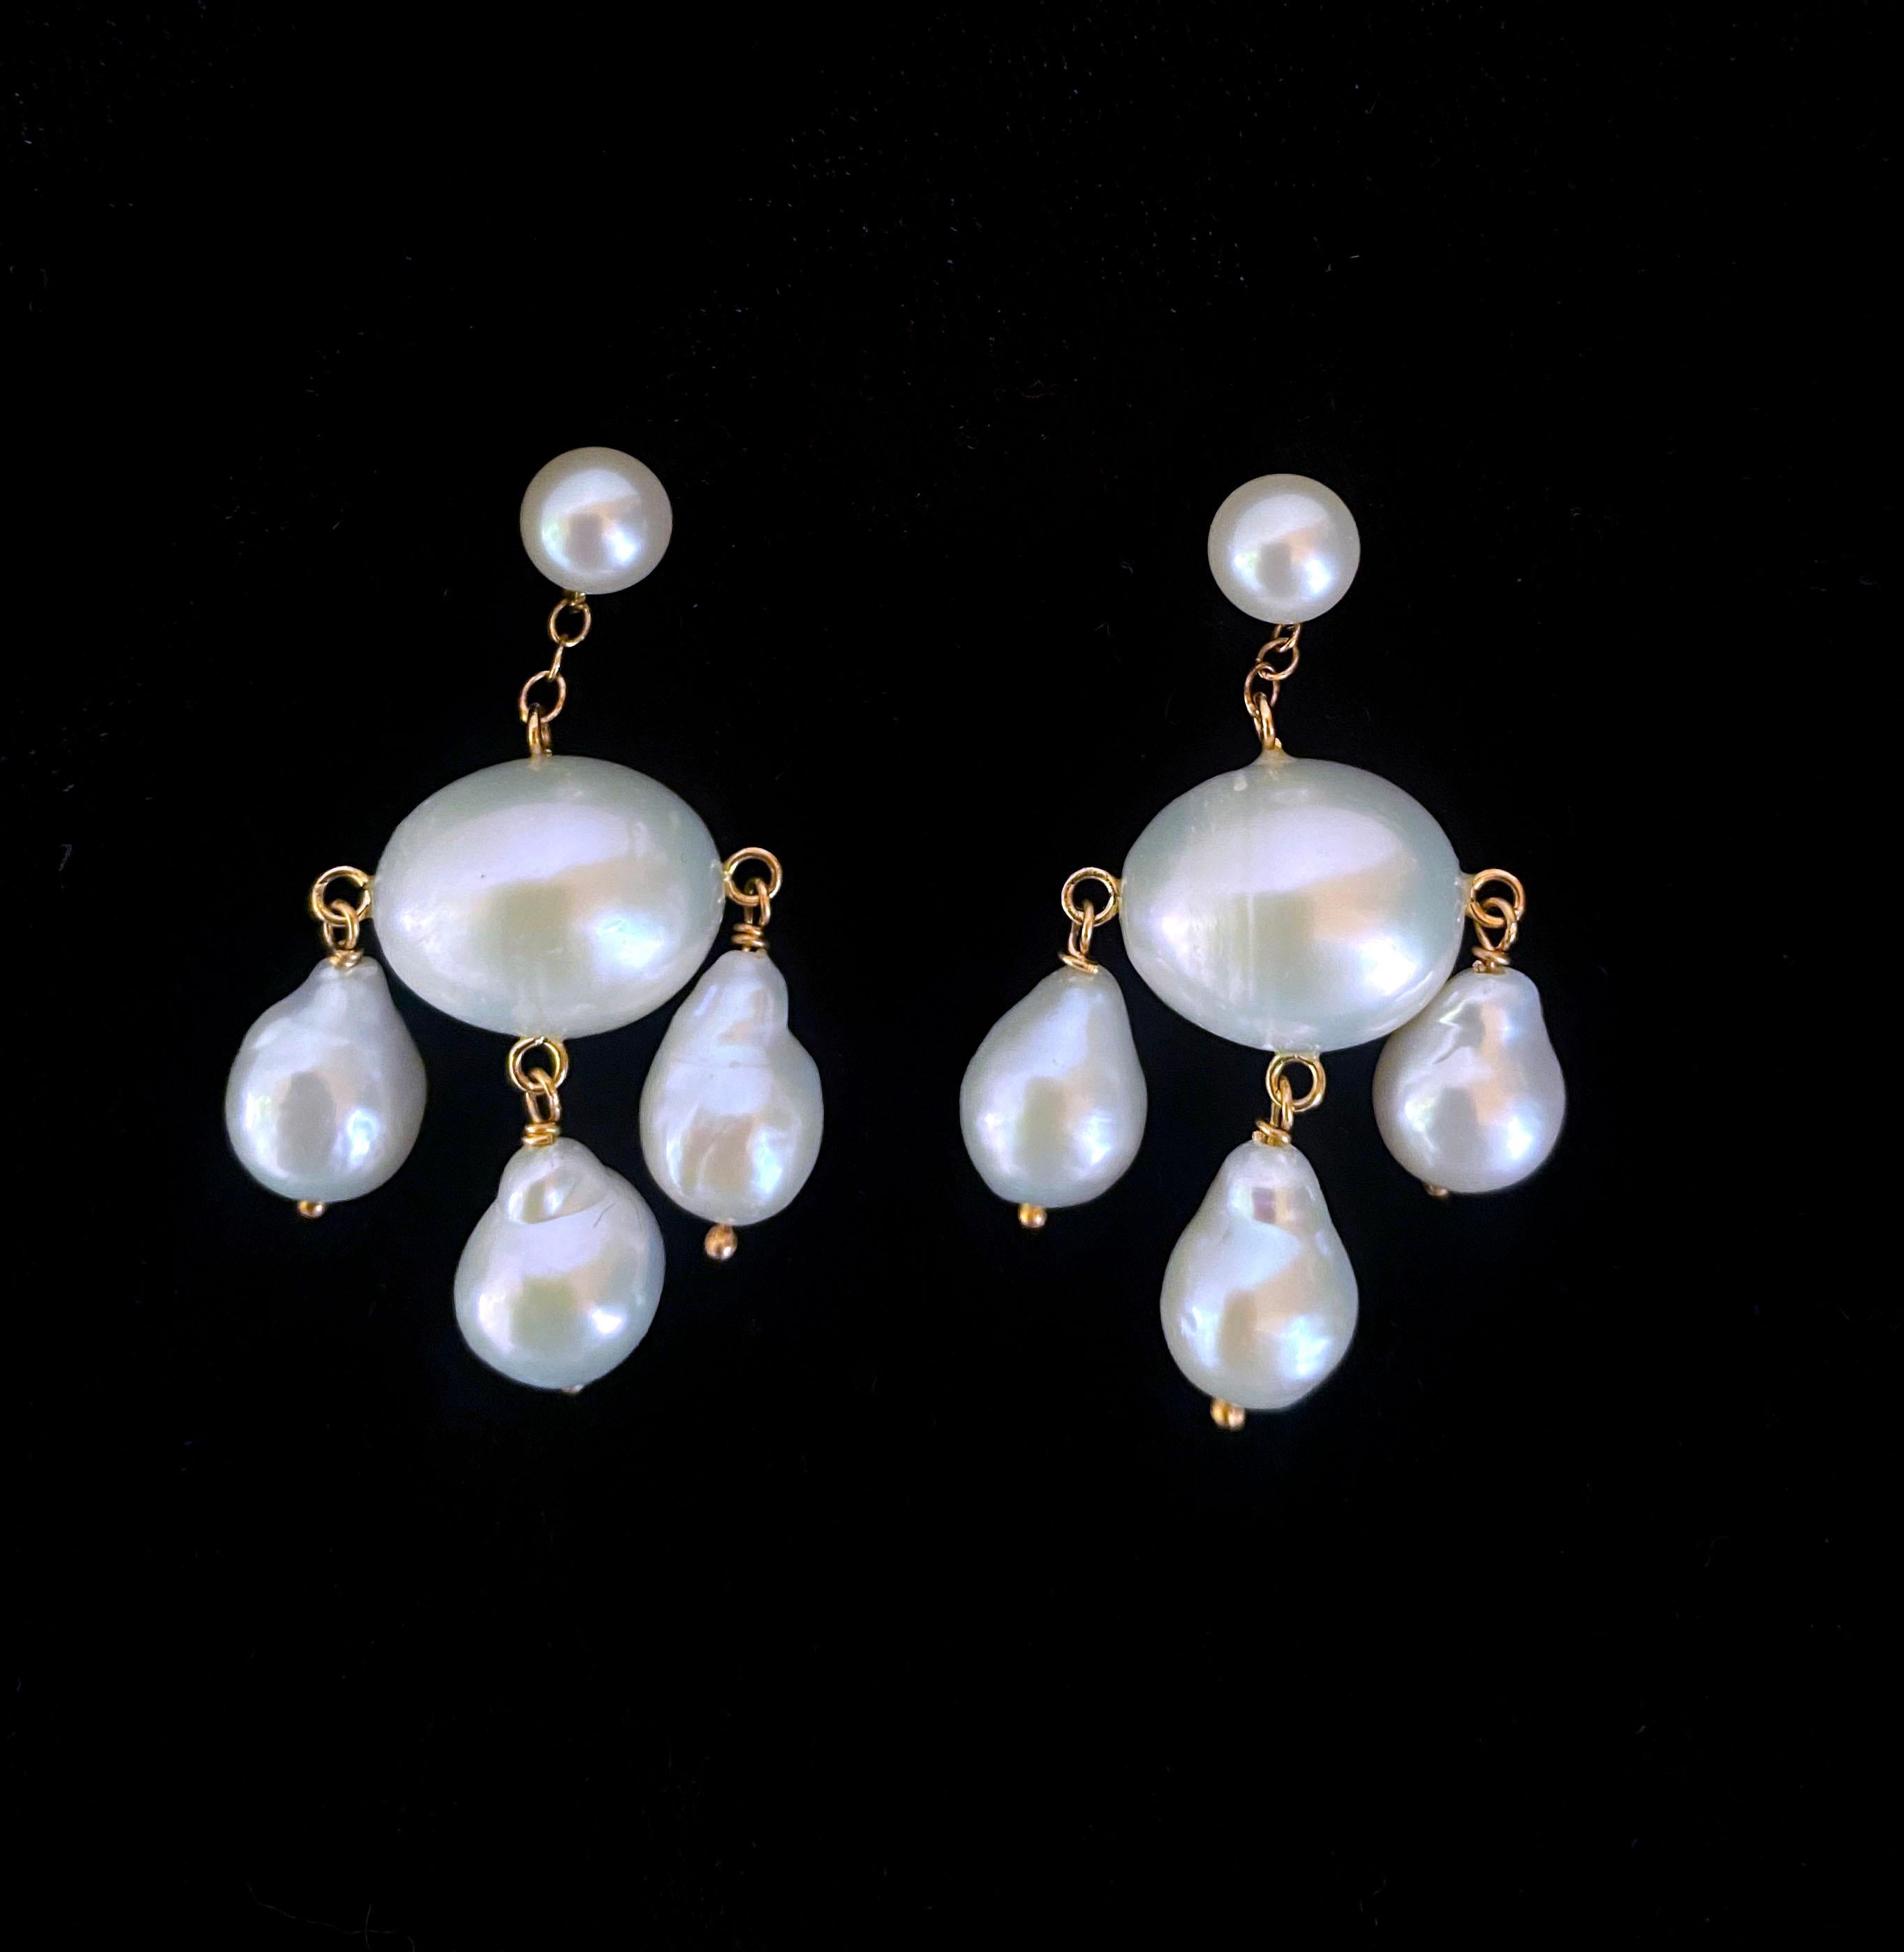 Klassisches Paar Marina J. Chandelier-Ohrringe. Dieses reizende Paar besteht vollständig aus hochglänzenden weißen Barockperlen, die ein lebhaftes Schillern aufweisen. Drei tropfenförmige Perlen baumeln an einer ovalen Barockperle, die komplett aus